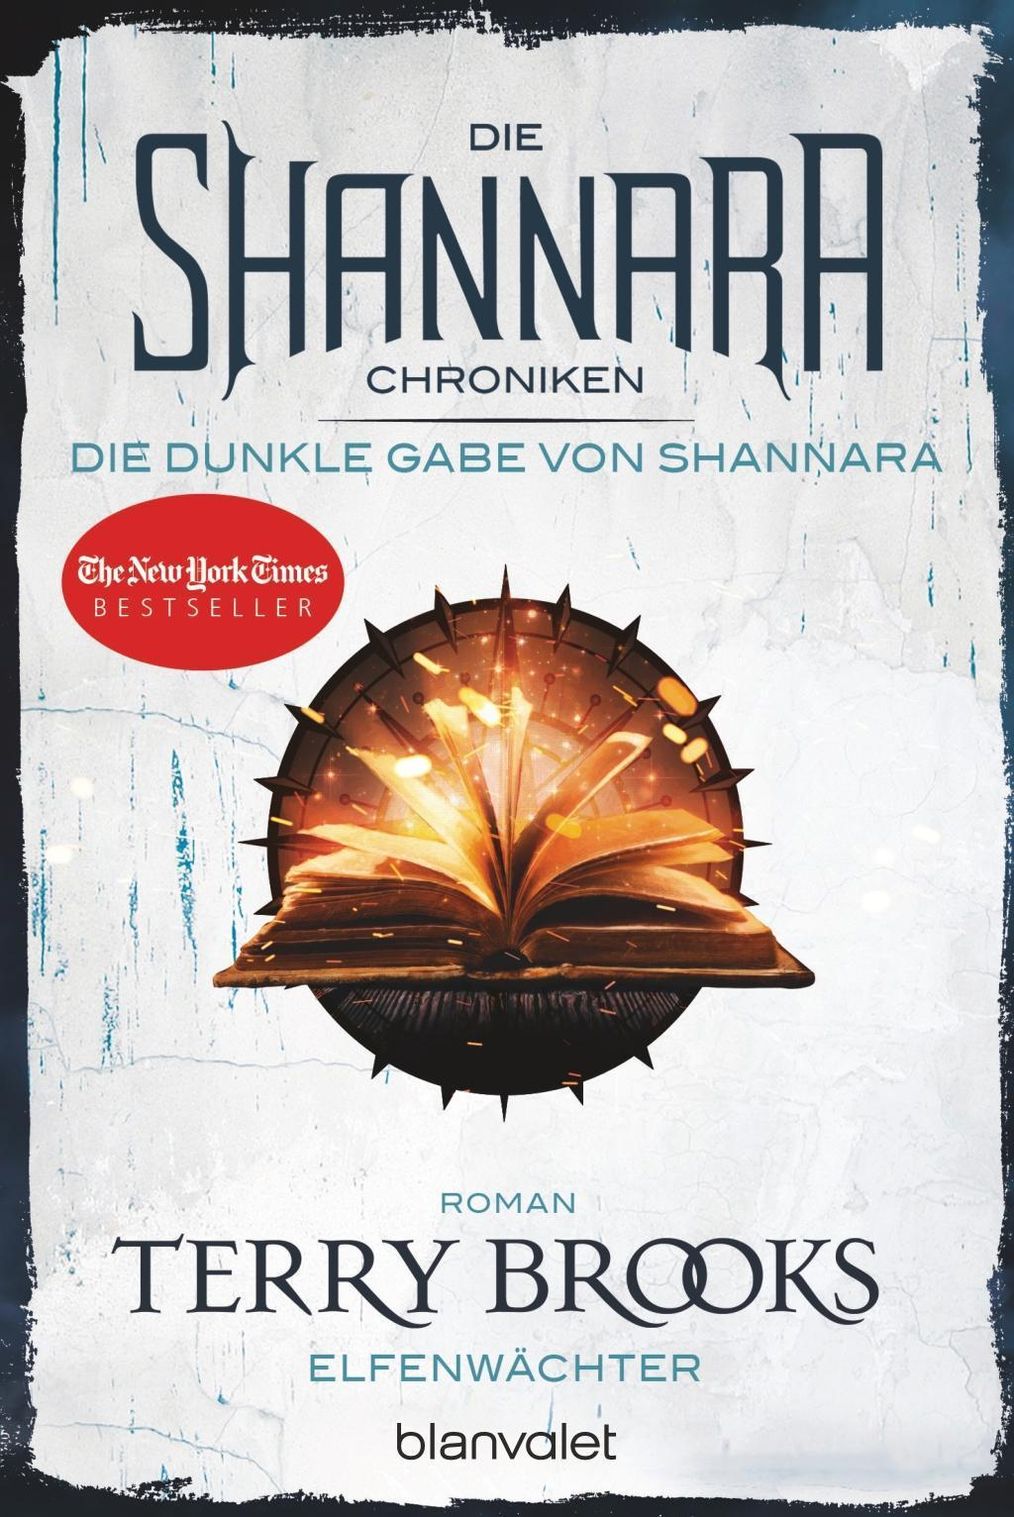 Elfenwächter Die Shannara-Chroniken: Die Dunkle Gabe von Shannara Bd.1 Buch